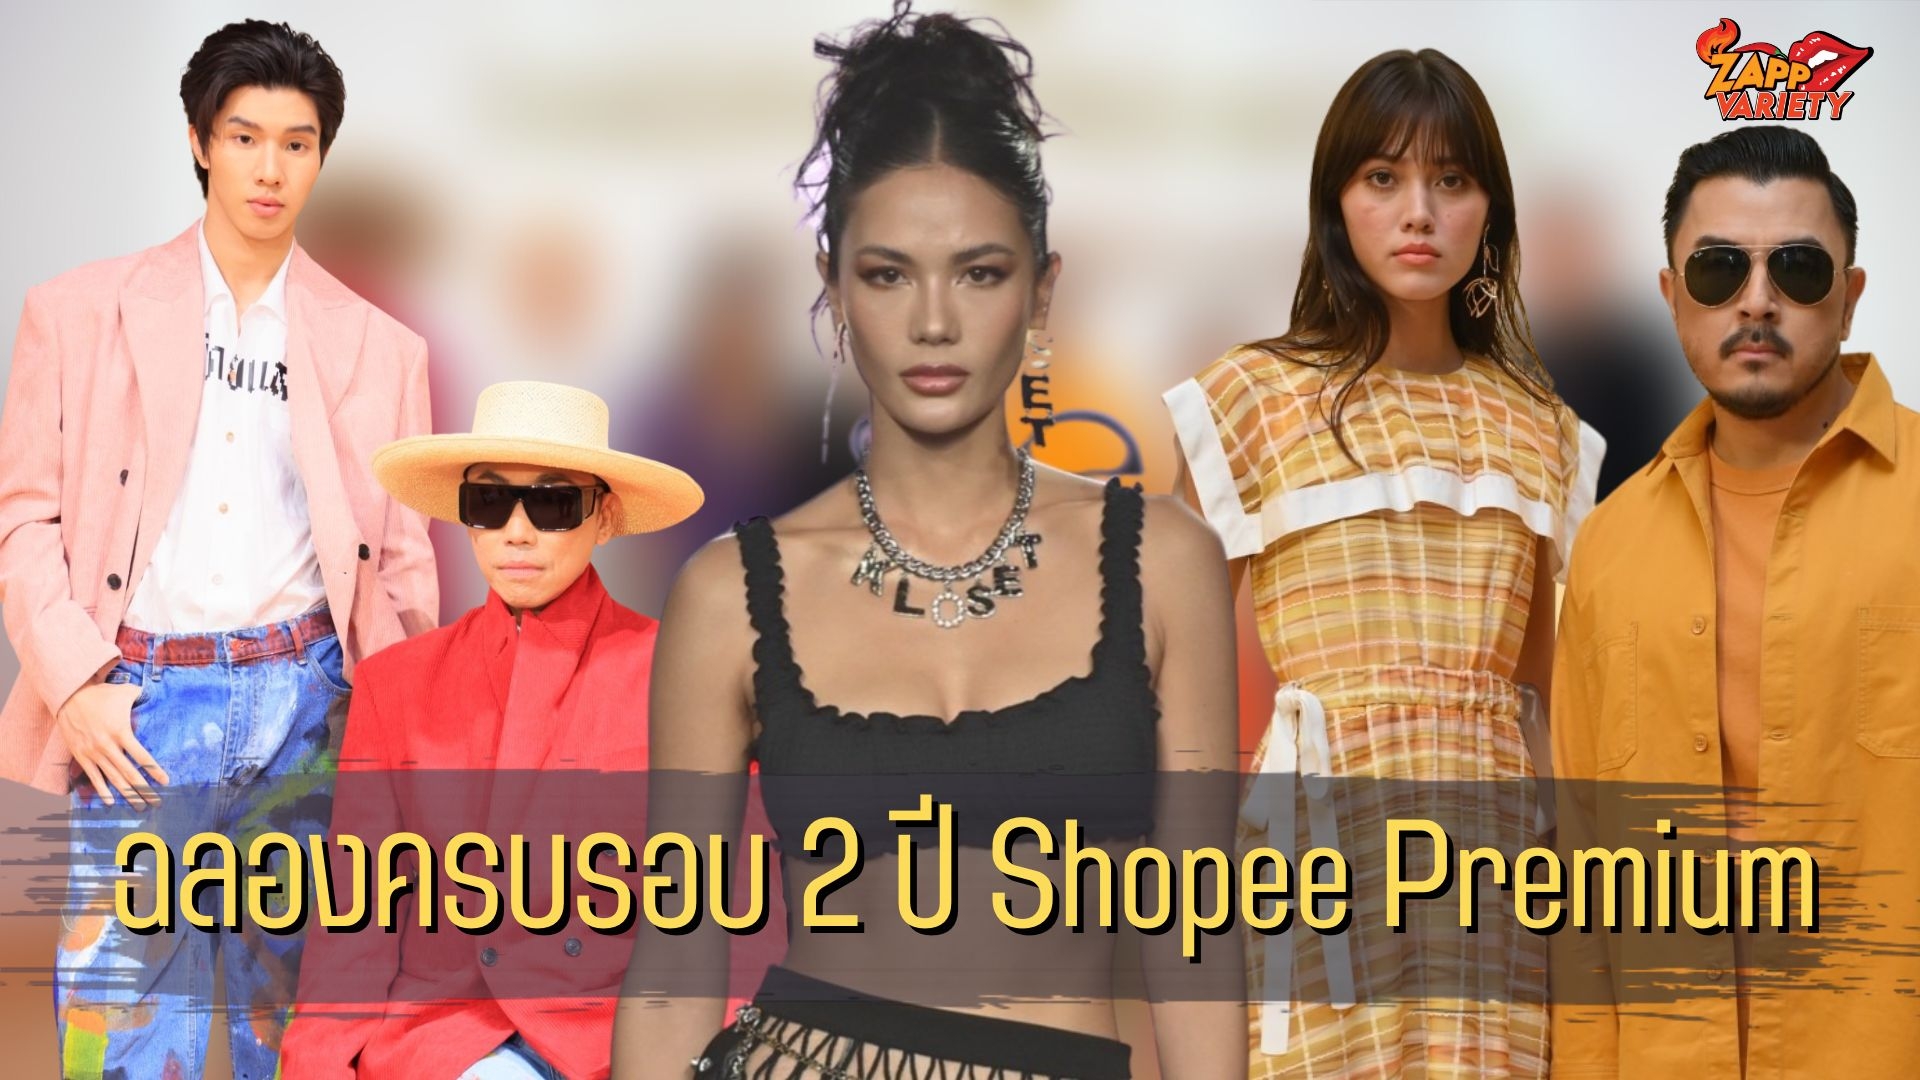 ช้อปปี้ มอบประสบการณ์เหนือระดับ เอาใจนักช้อปสายแฟ คอลแลบ 7 แบรนด์ไทยดีไซเนอร์ จัดเต็มกับคอลเลคชั่นสุดเอ็กซ์คลูซีฟบนรันเวย์ ‘Thai Designer Fashion Show by Shopee Premium’